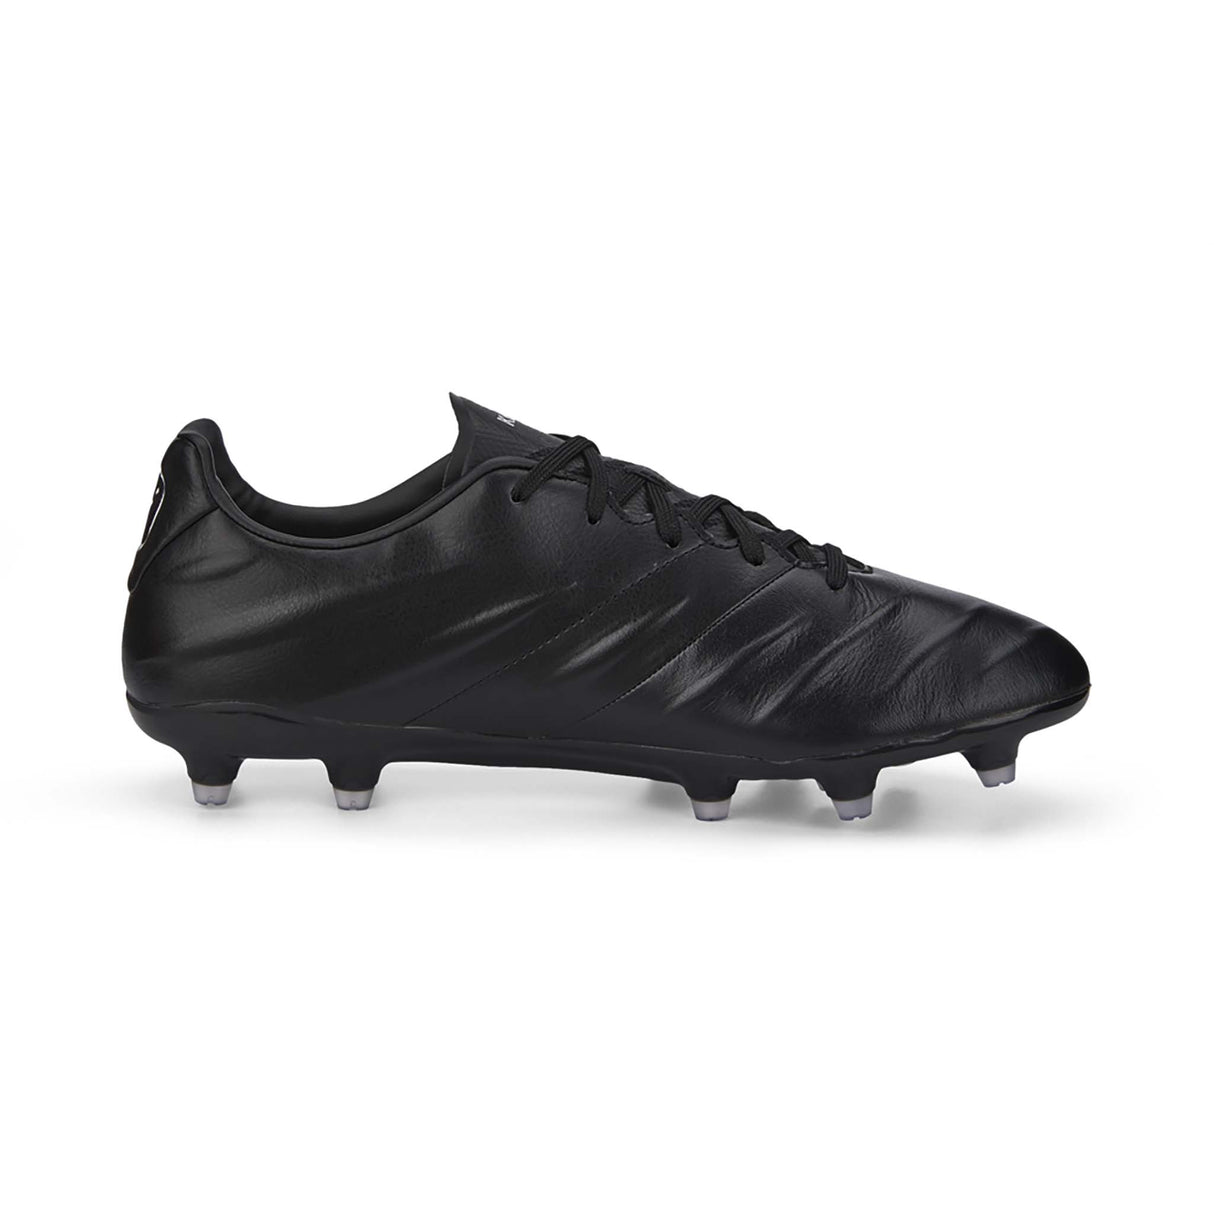 Puma King Pro 21 FG souliers de soccer à crampons noir blanc lateral